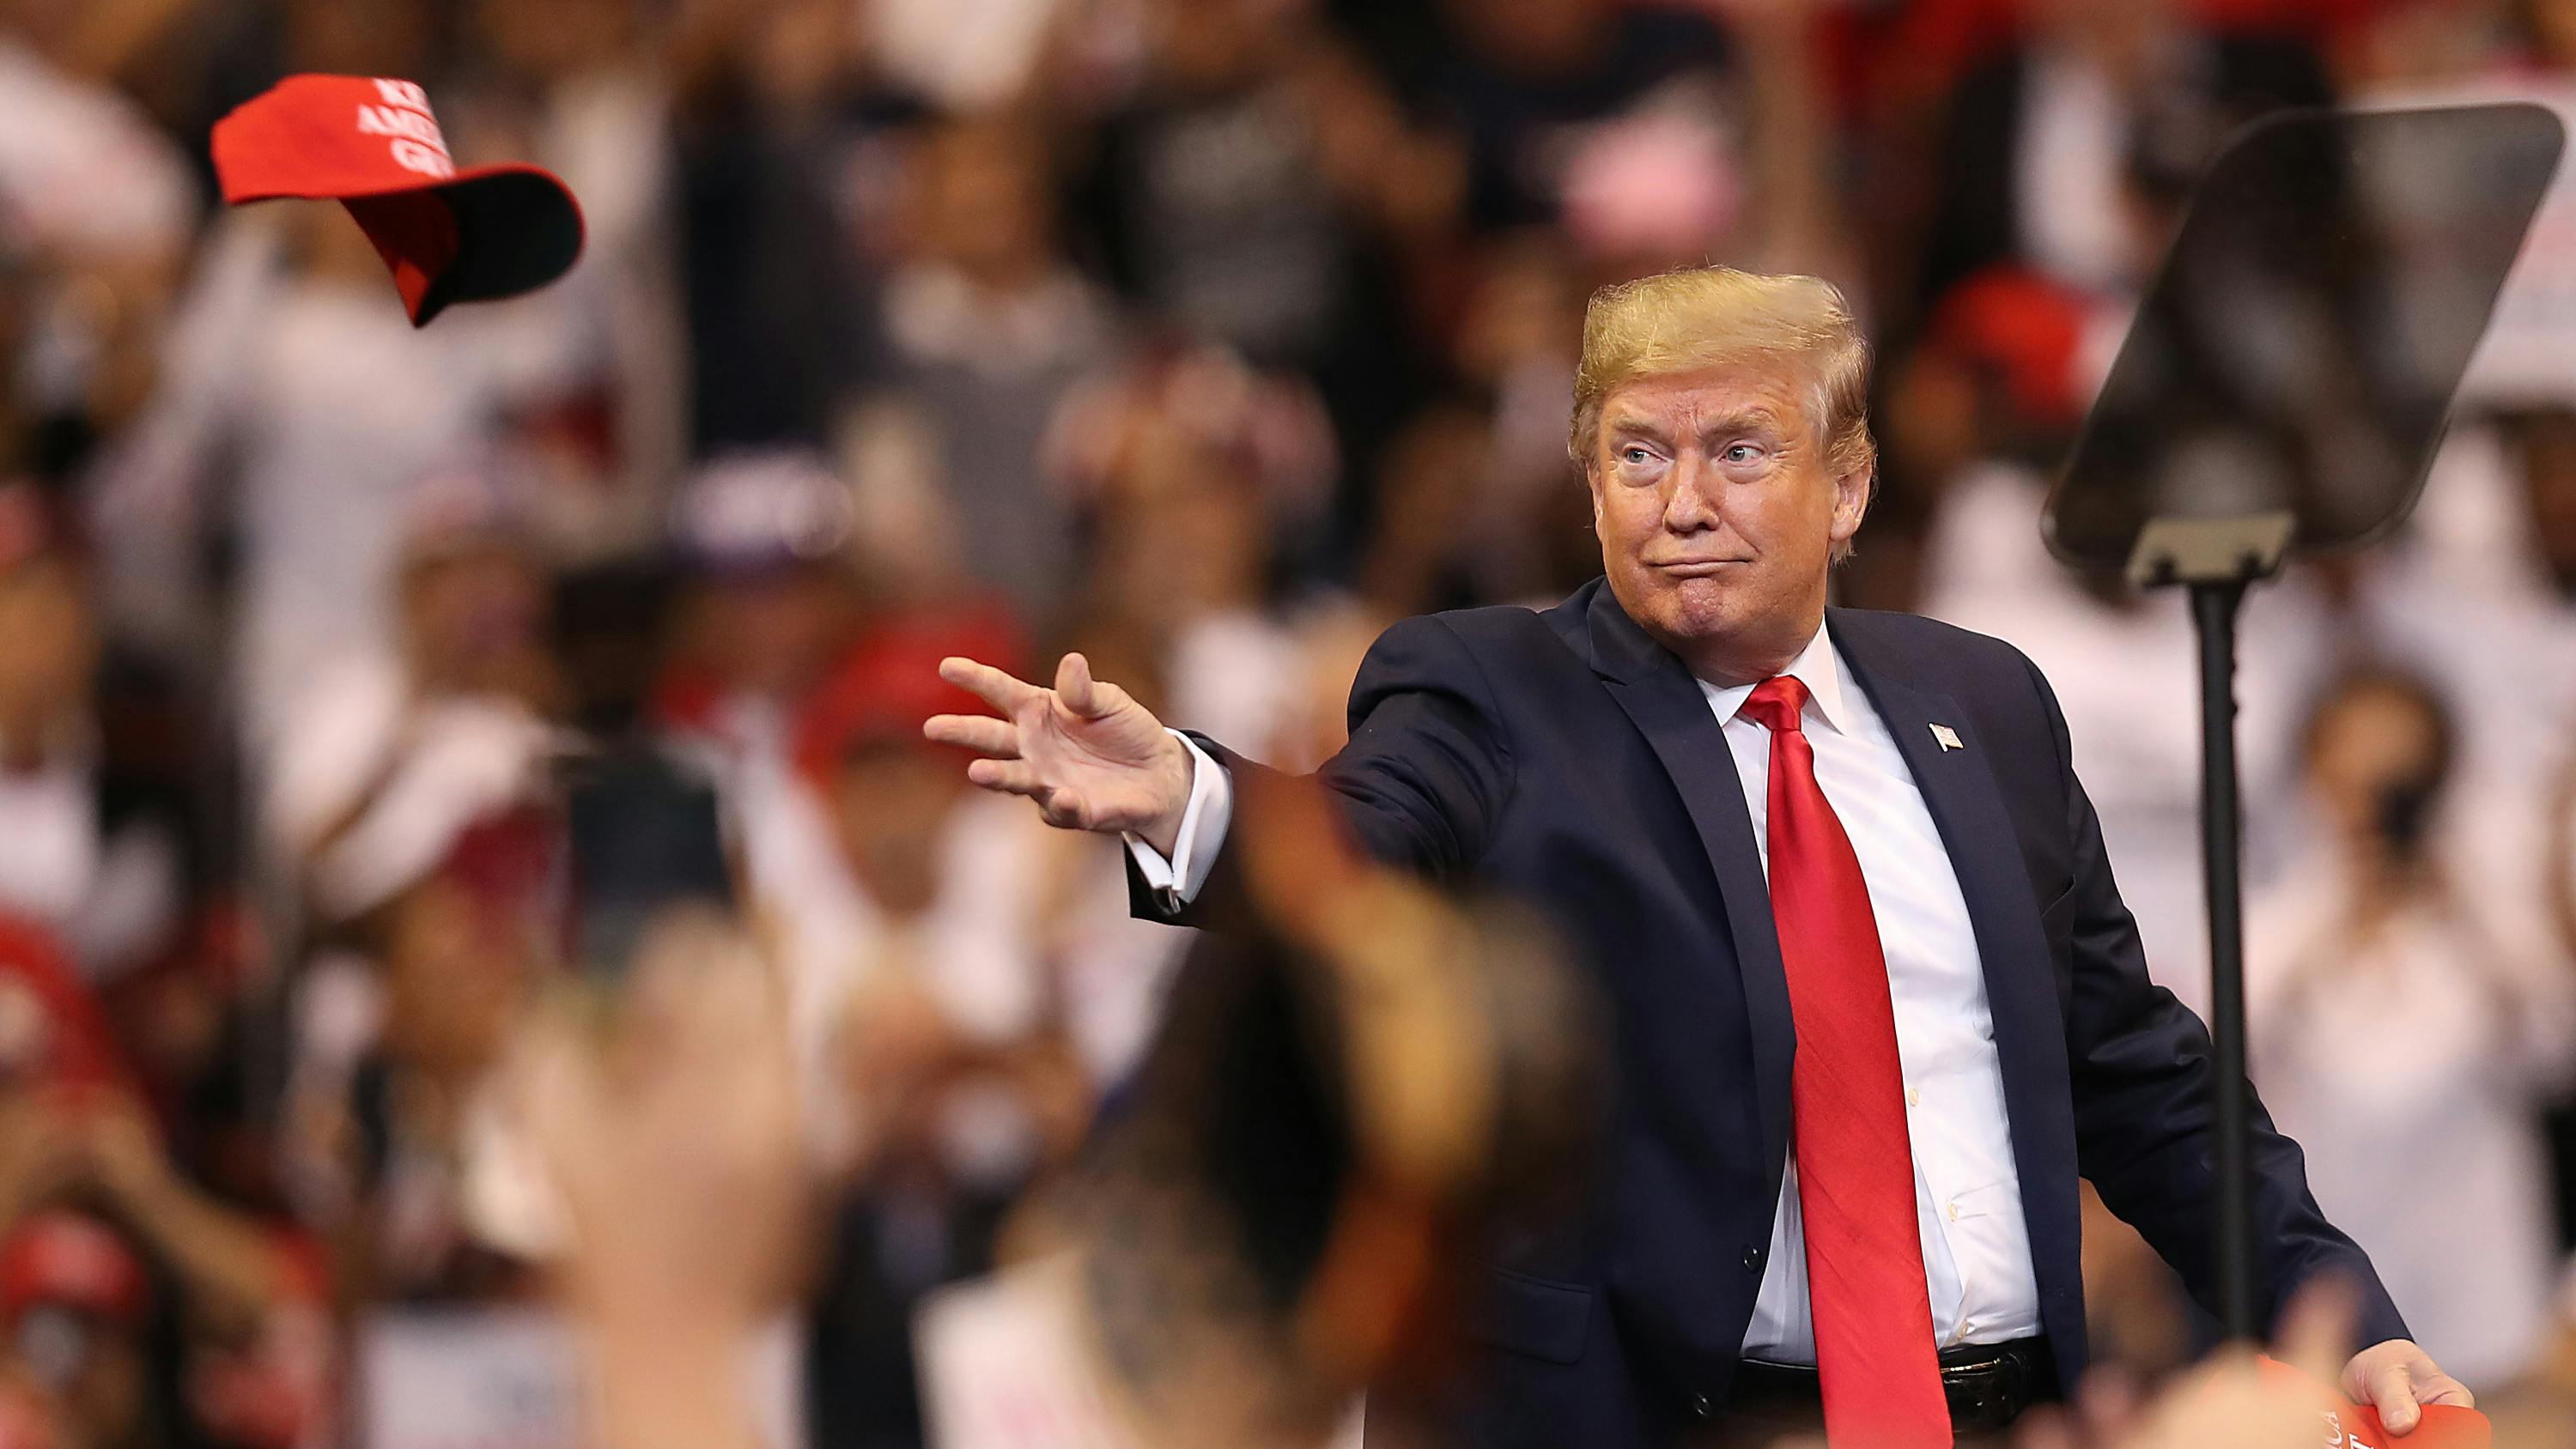 Wir sehen einen gut gelaunten Trump auf einer Wahlveranstaltung – und er wirft eine rote „MAGA“-Kappe in die Menge. 